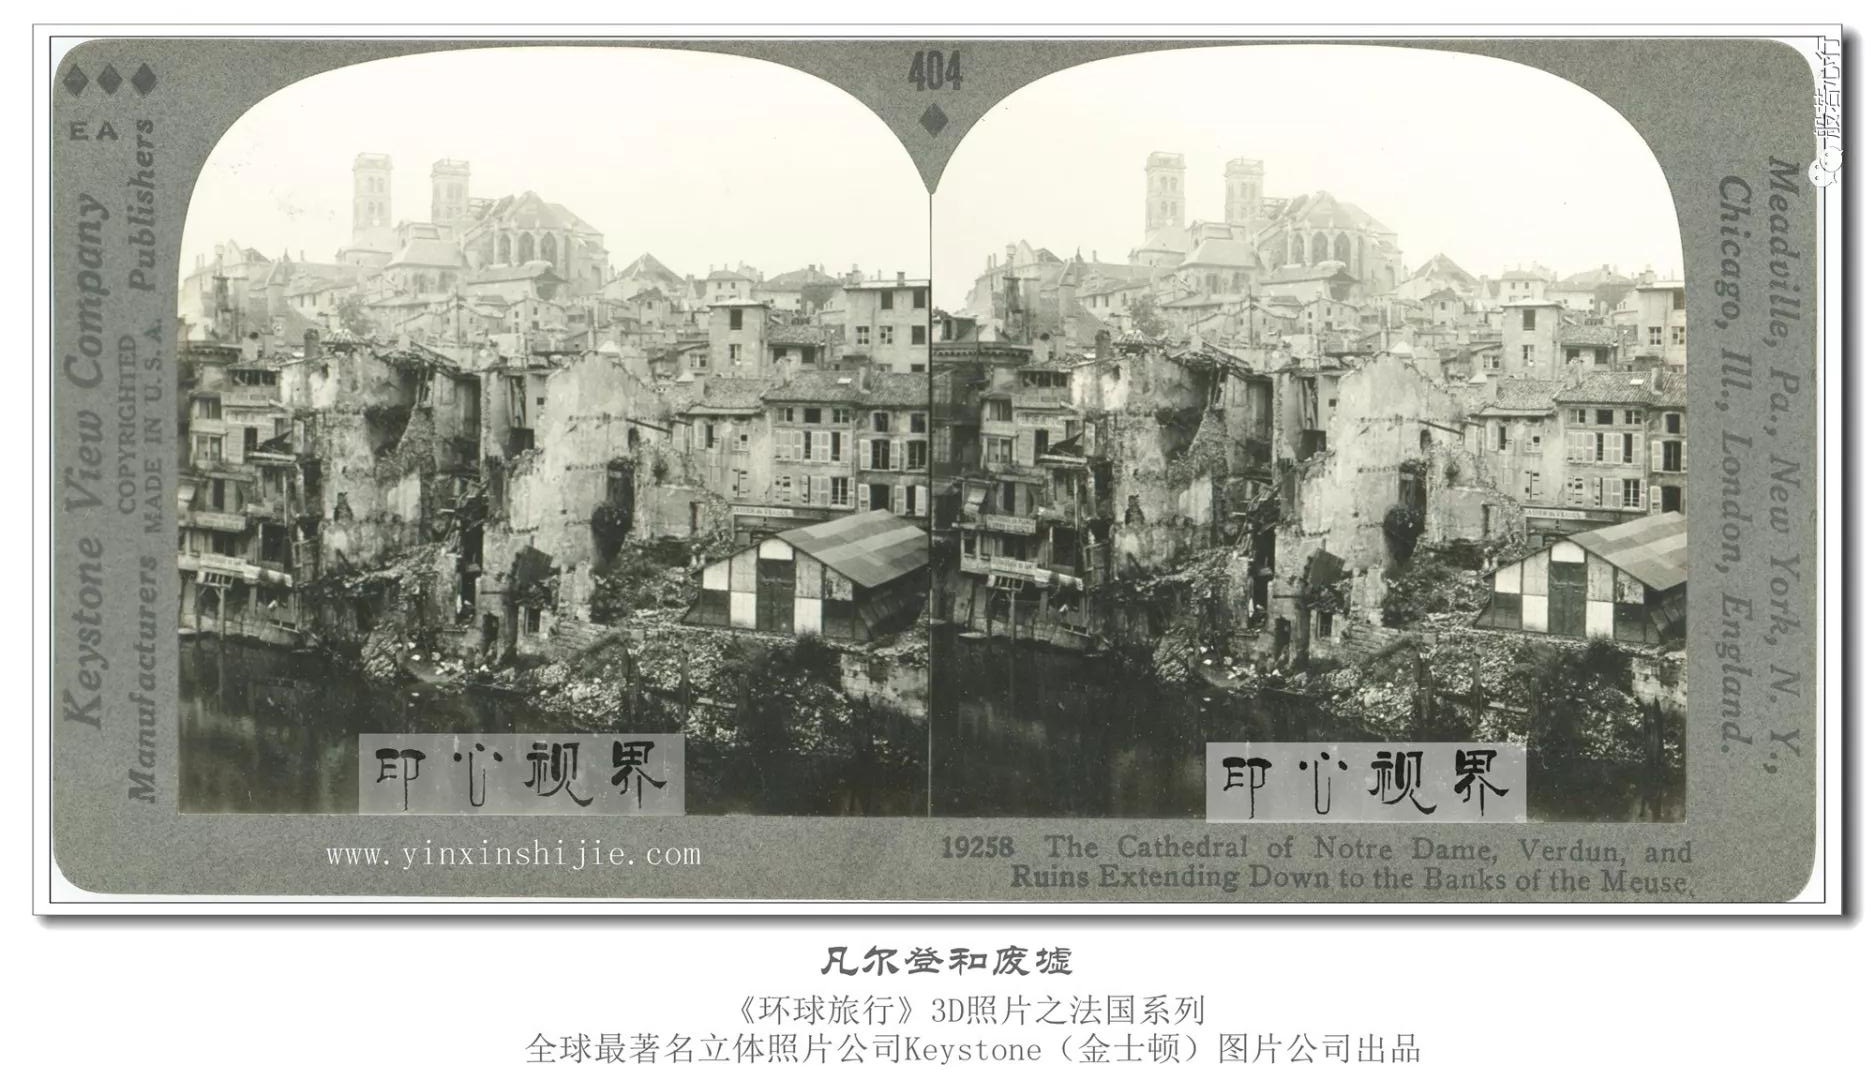 凡尔登和废墟-1936年3D版《环球旅行》立体照片